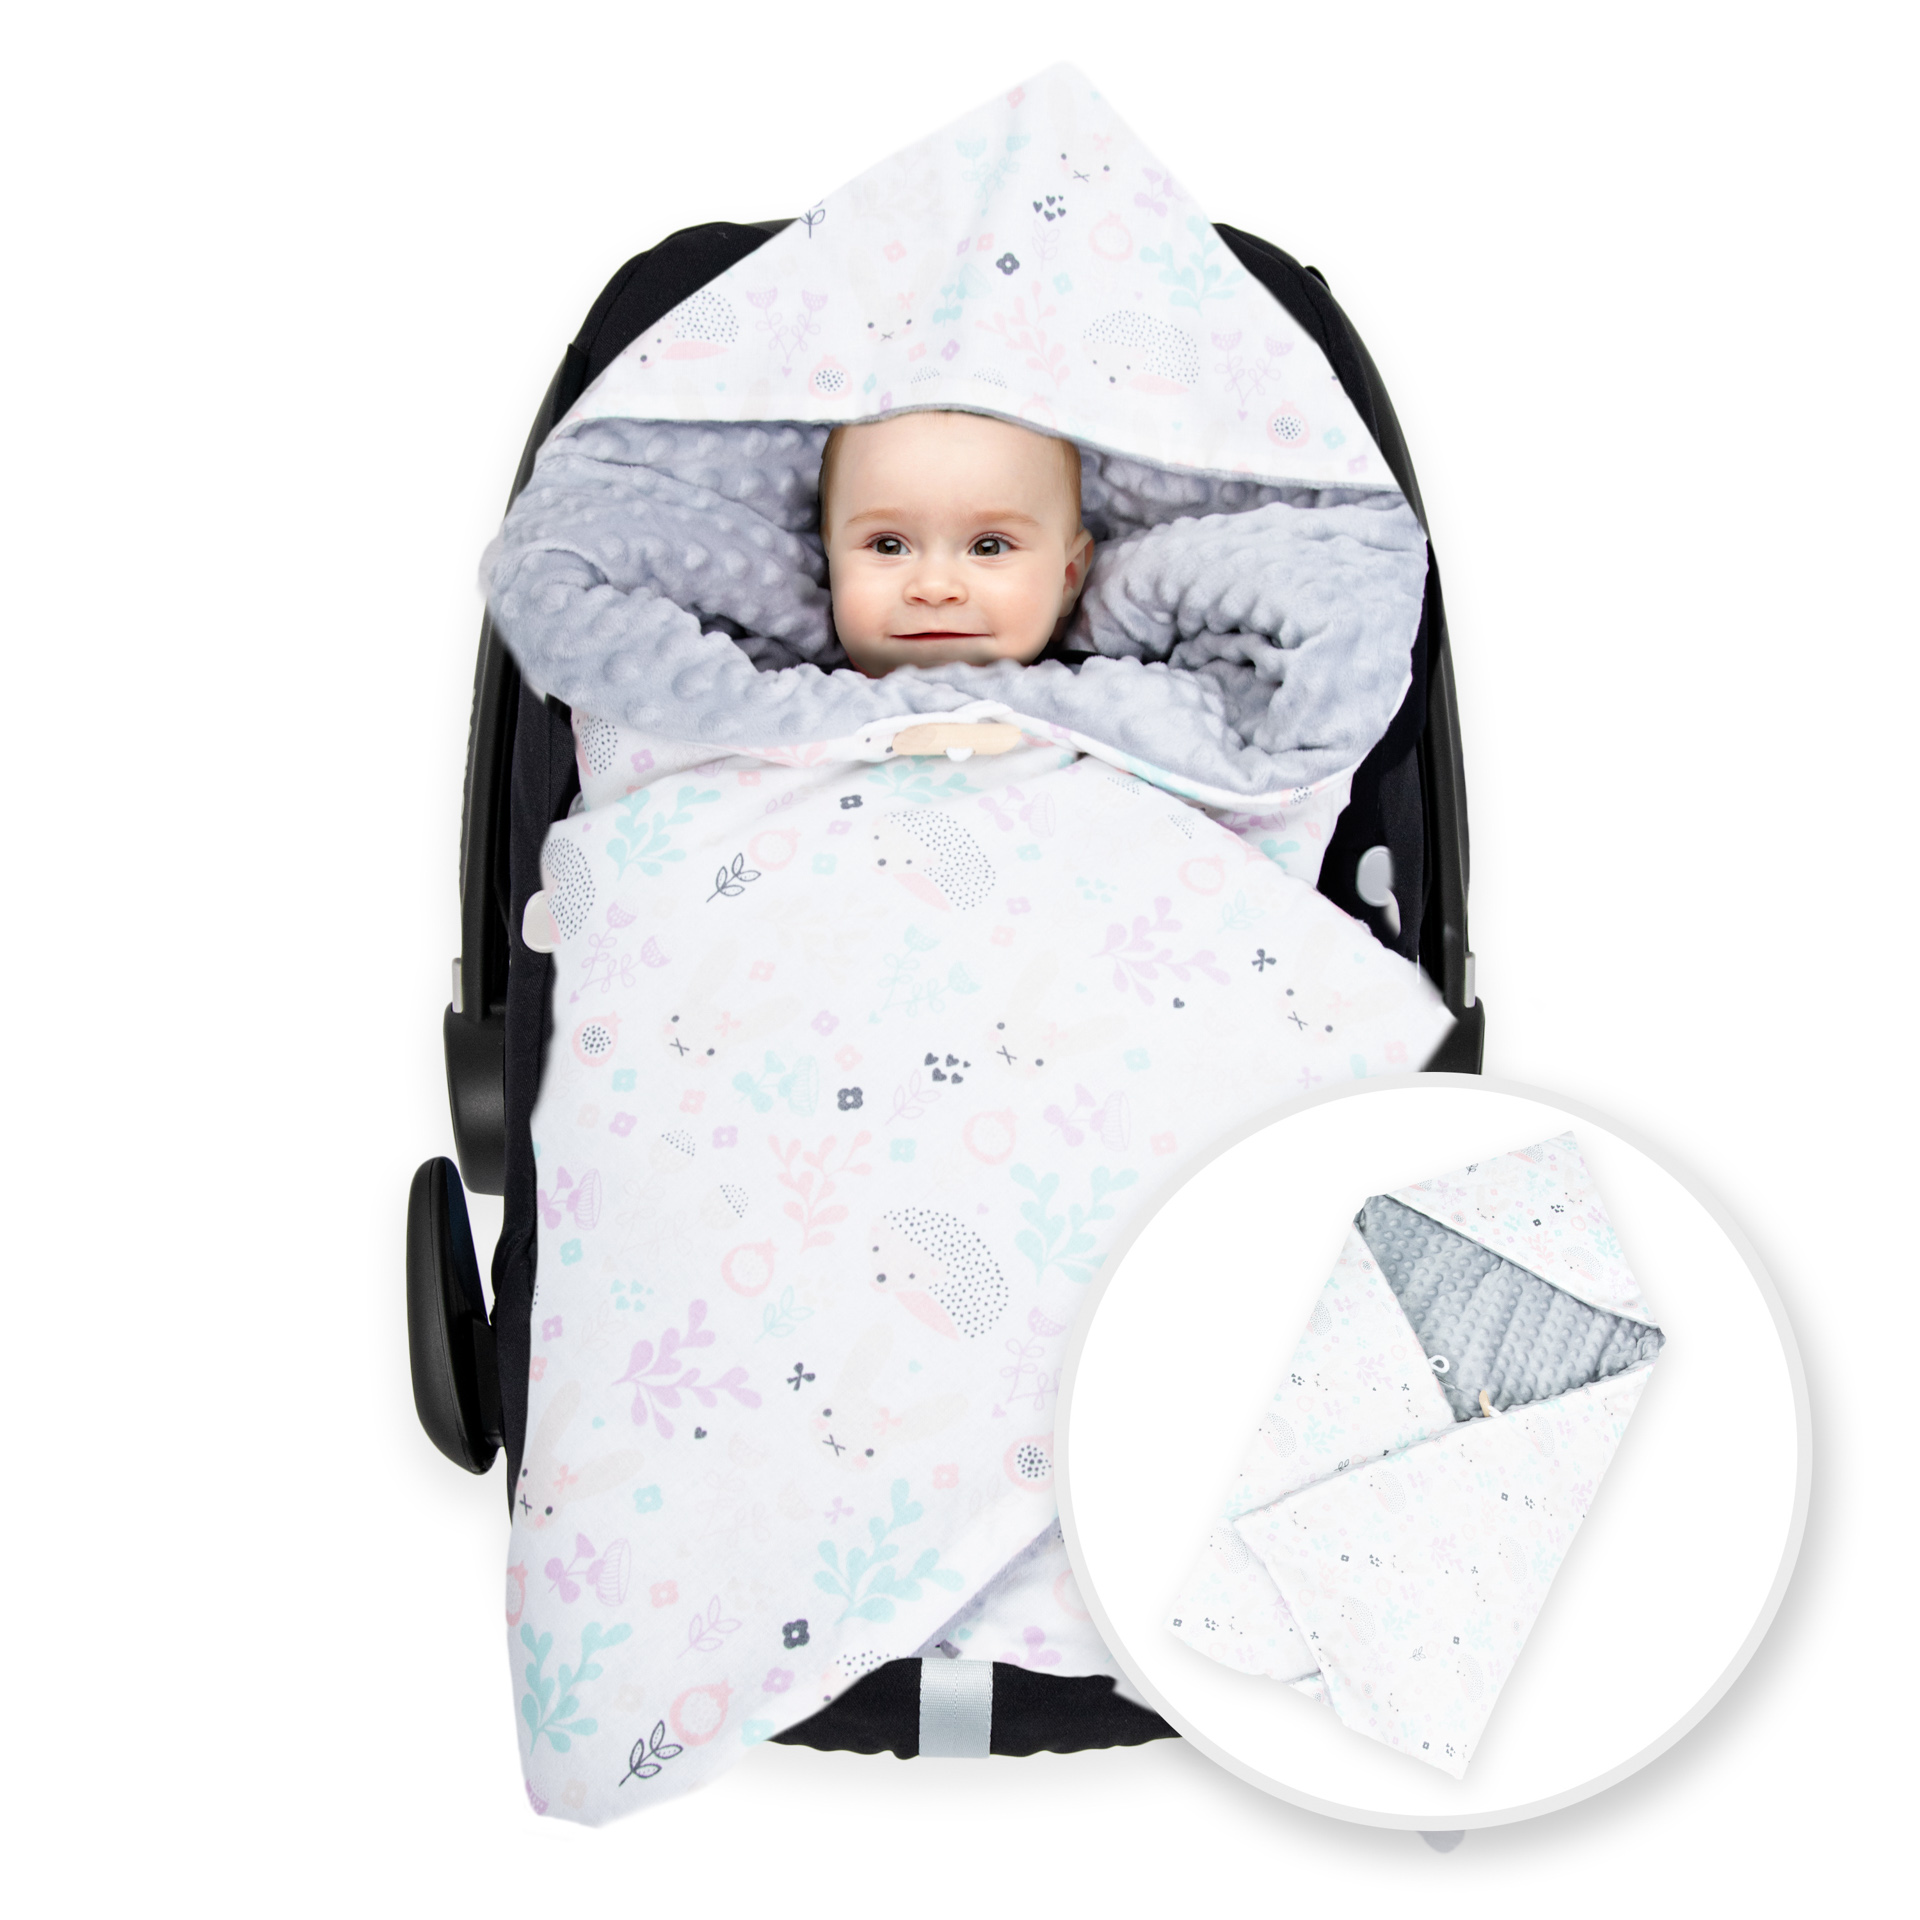 Baby Einschlagdecke mit Namen bestickt Babydecke Babyschale Maxi Cosi Autositz 